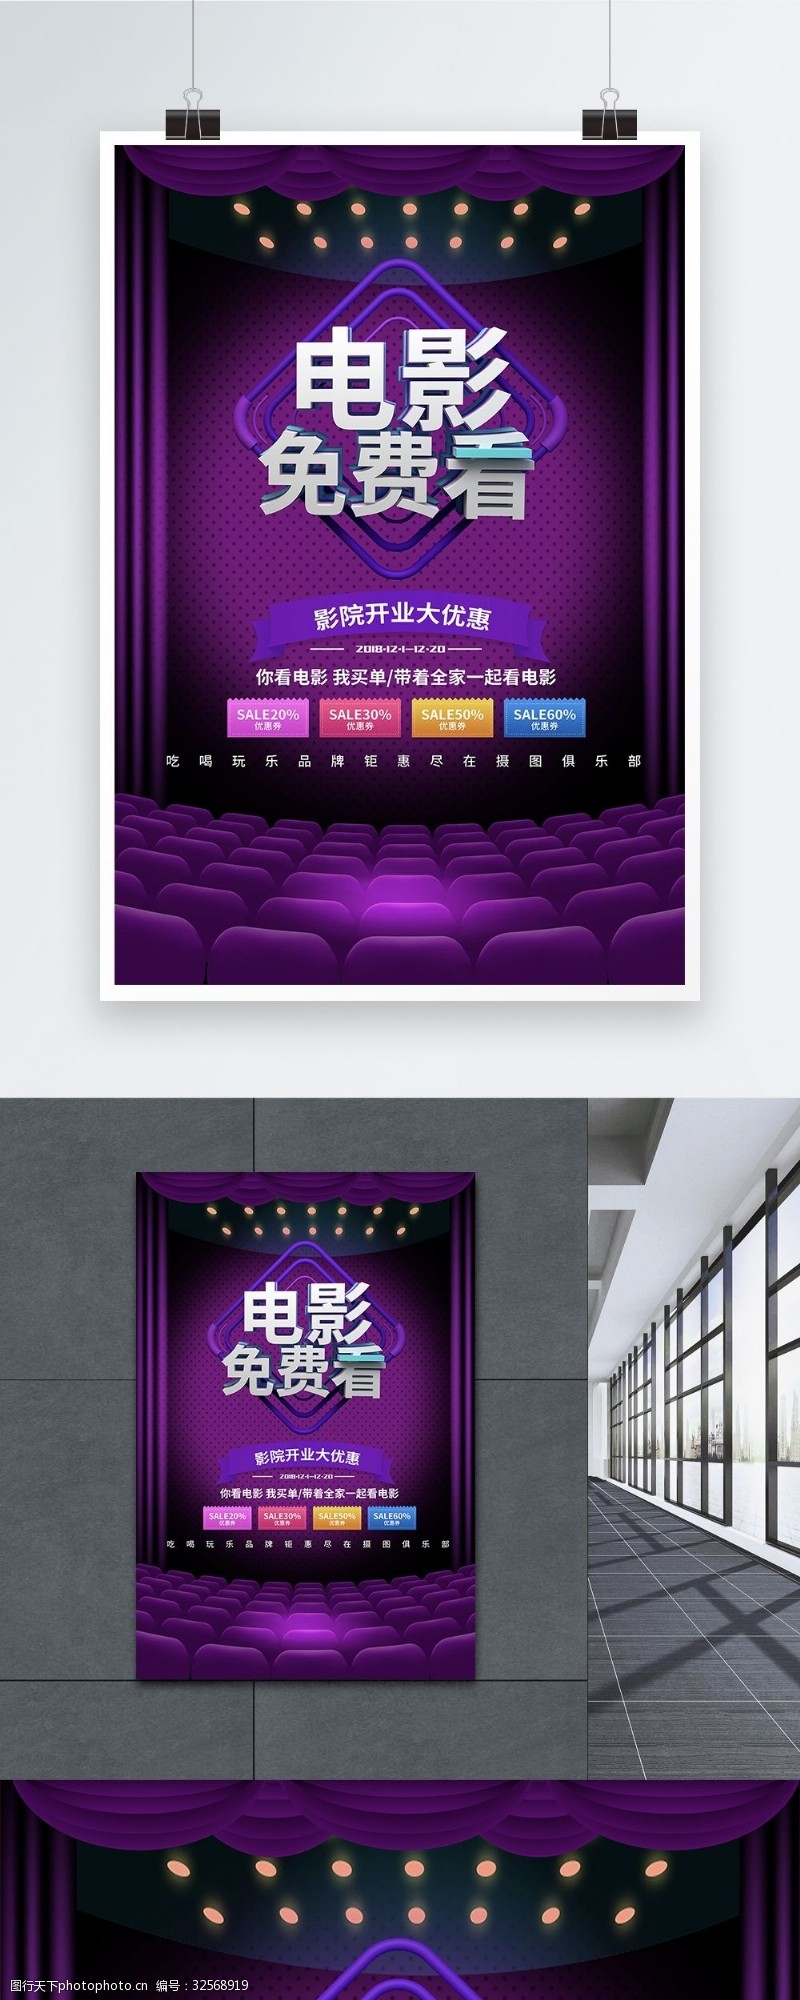 私人影院紫色大气立体字电影院免费观影促销海报